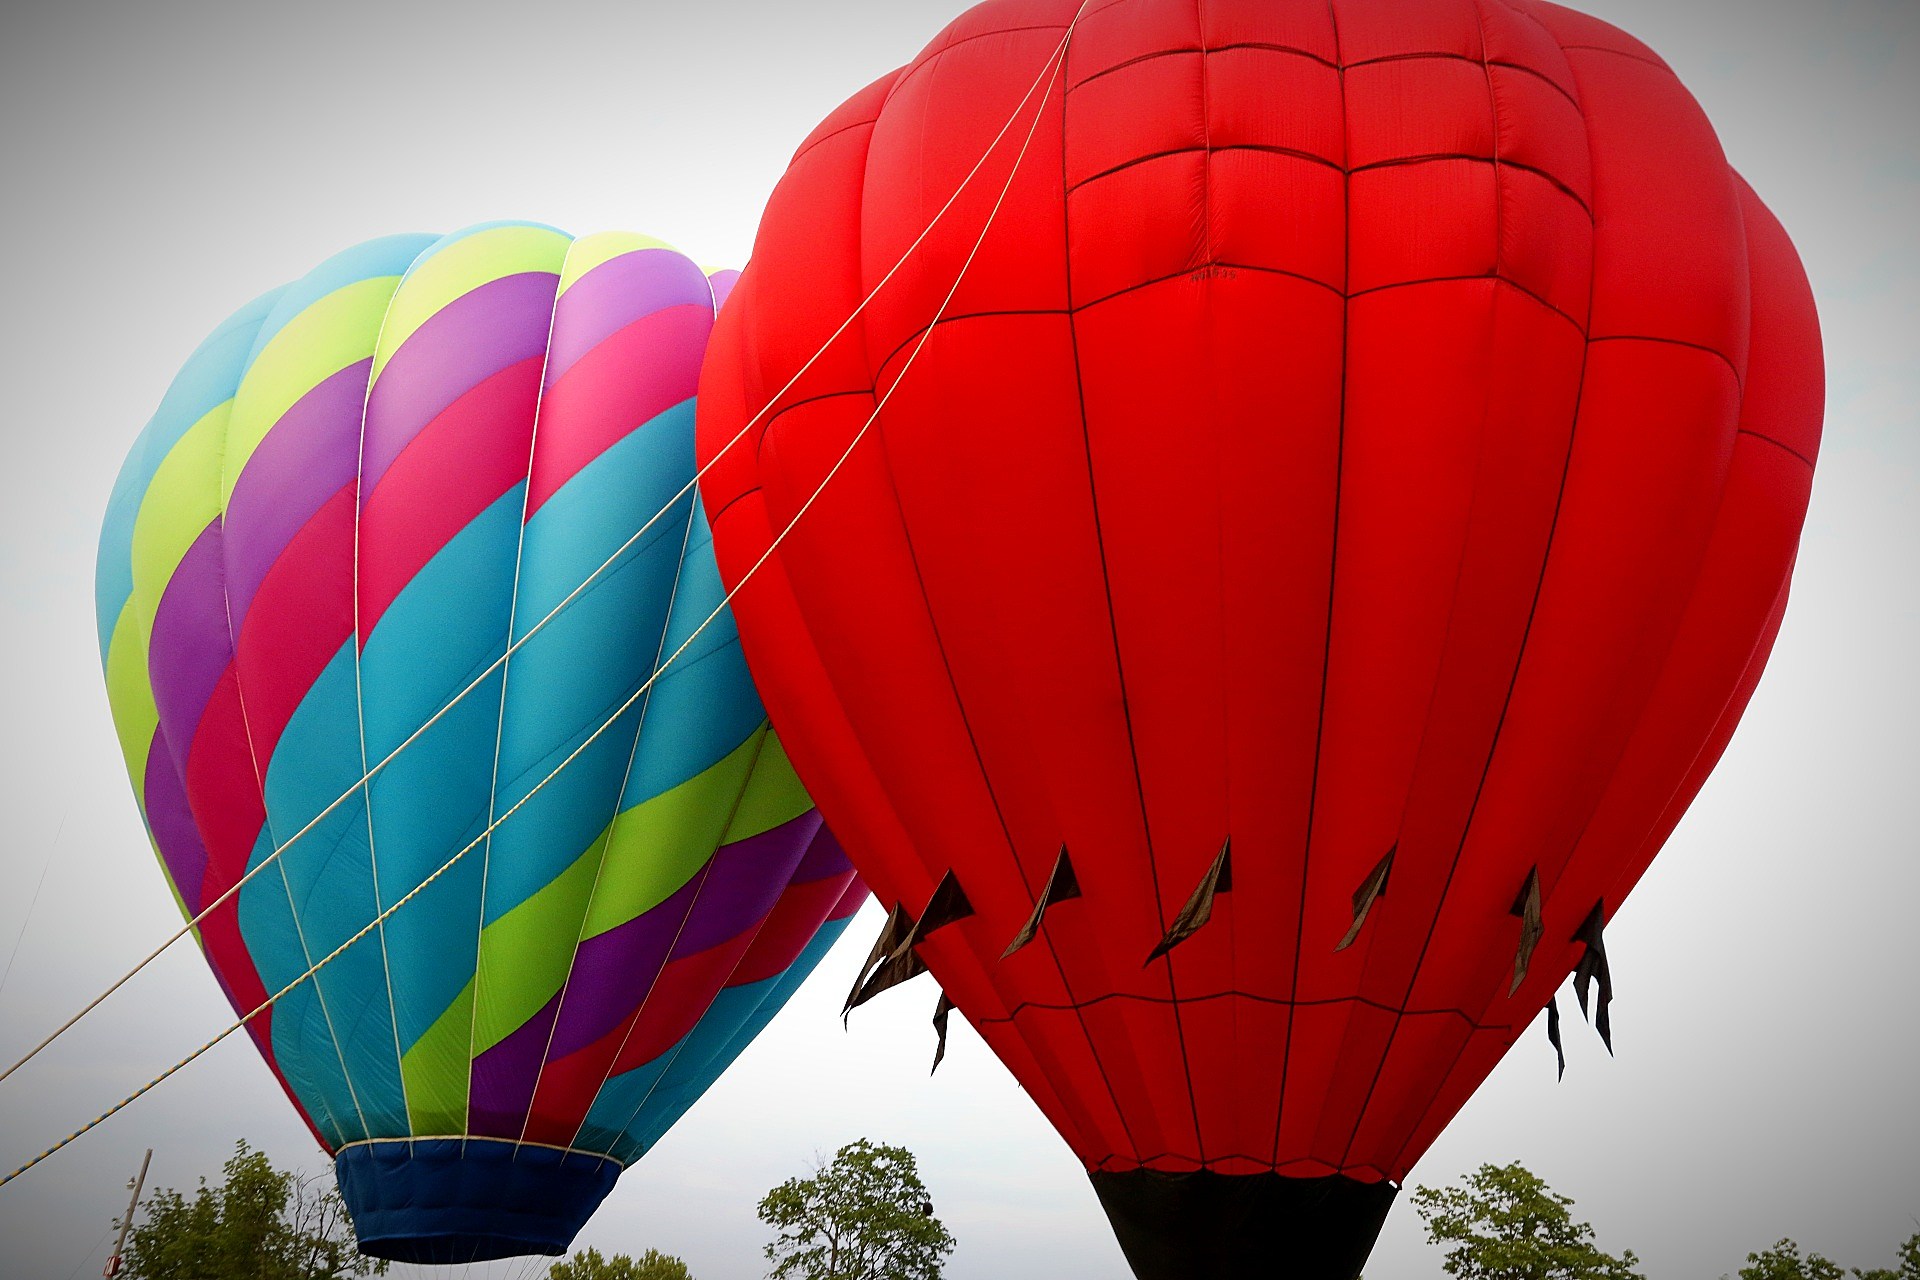 Chamber of Commerce Hot Air Balloon & Kite Festival is Fri & Sat